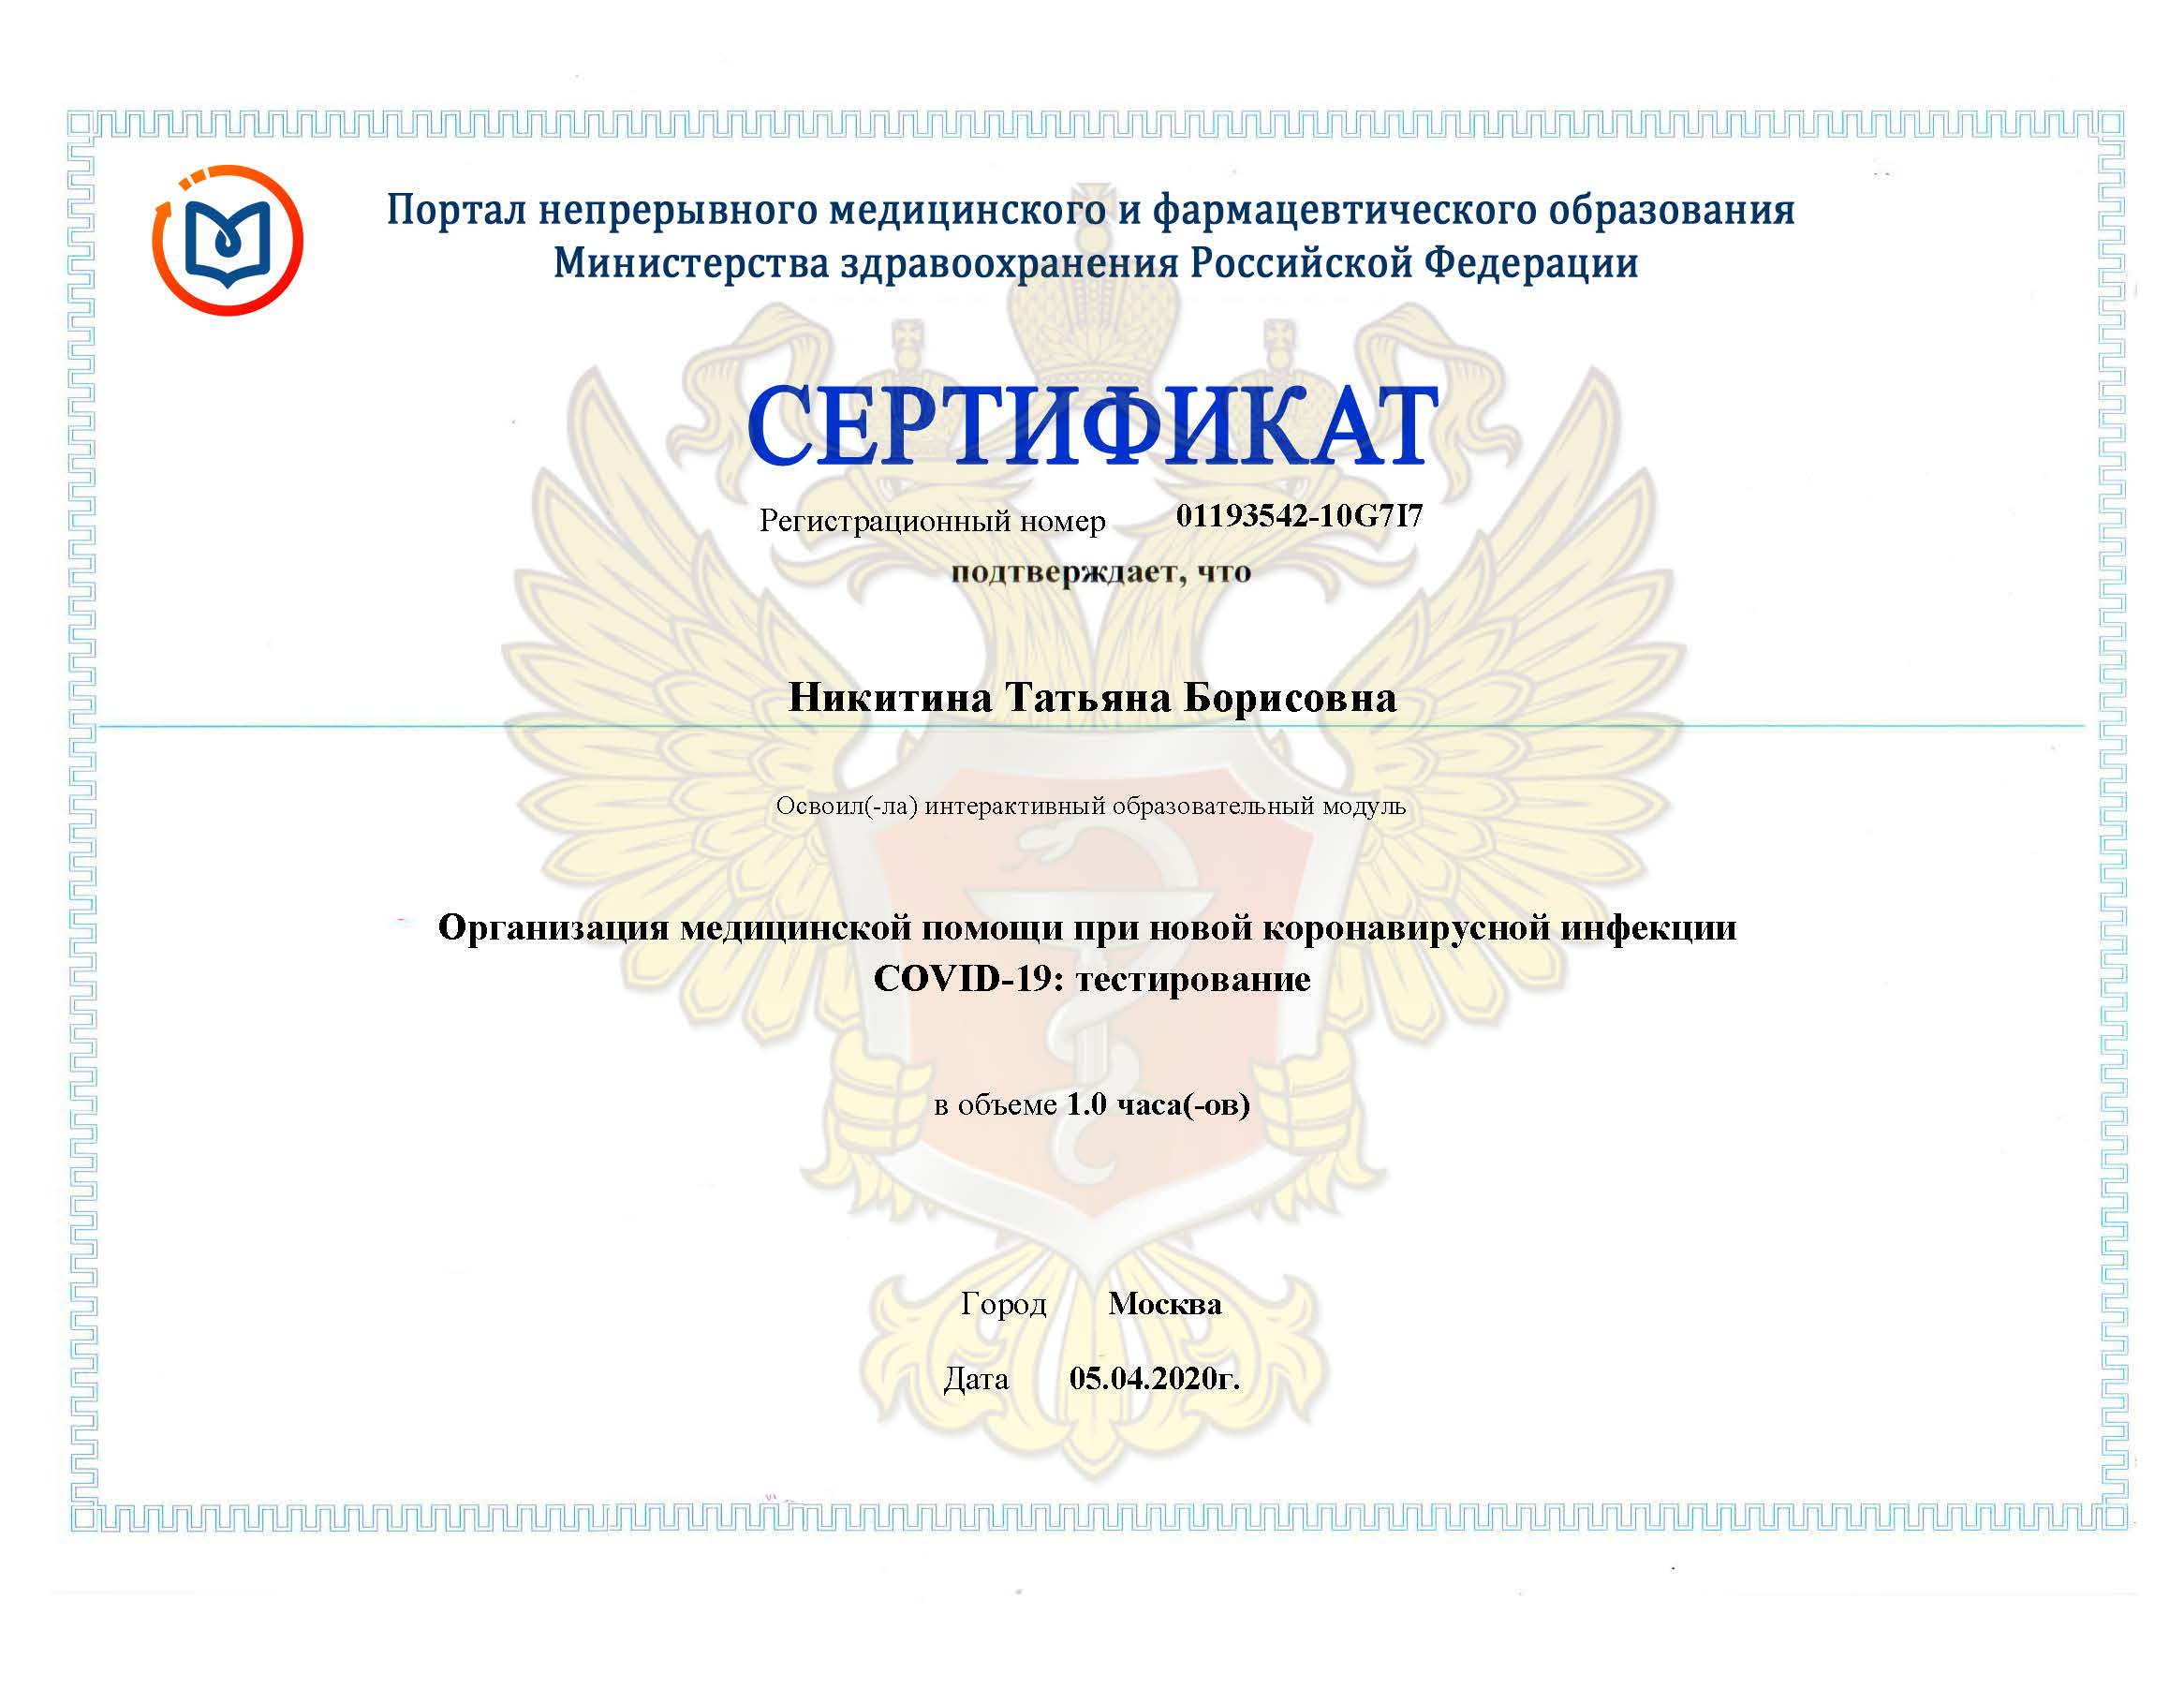 Портал медицинского фармацевтического образования минздрава россии. Good standing Certificate для врачей Минздрав.